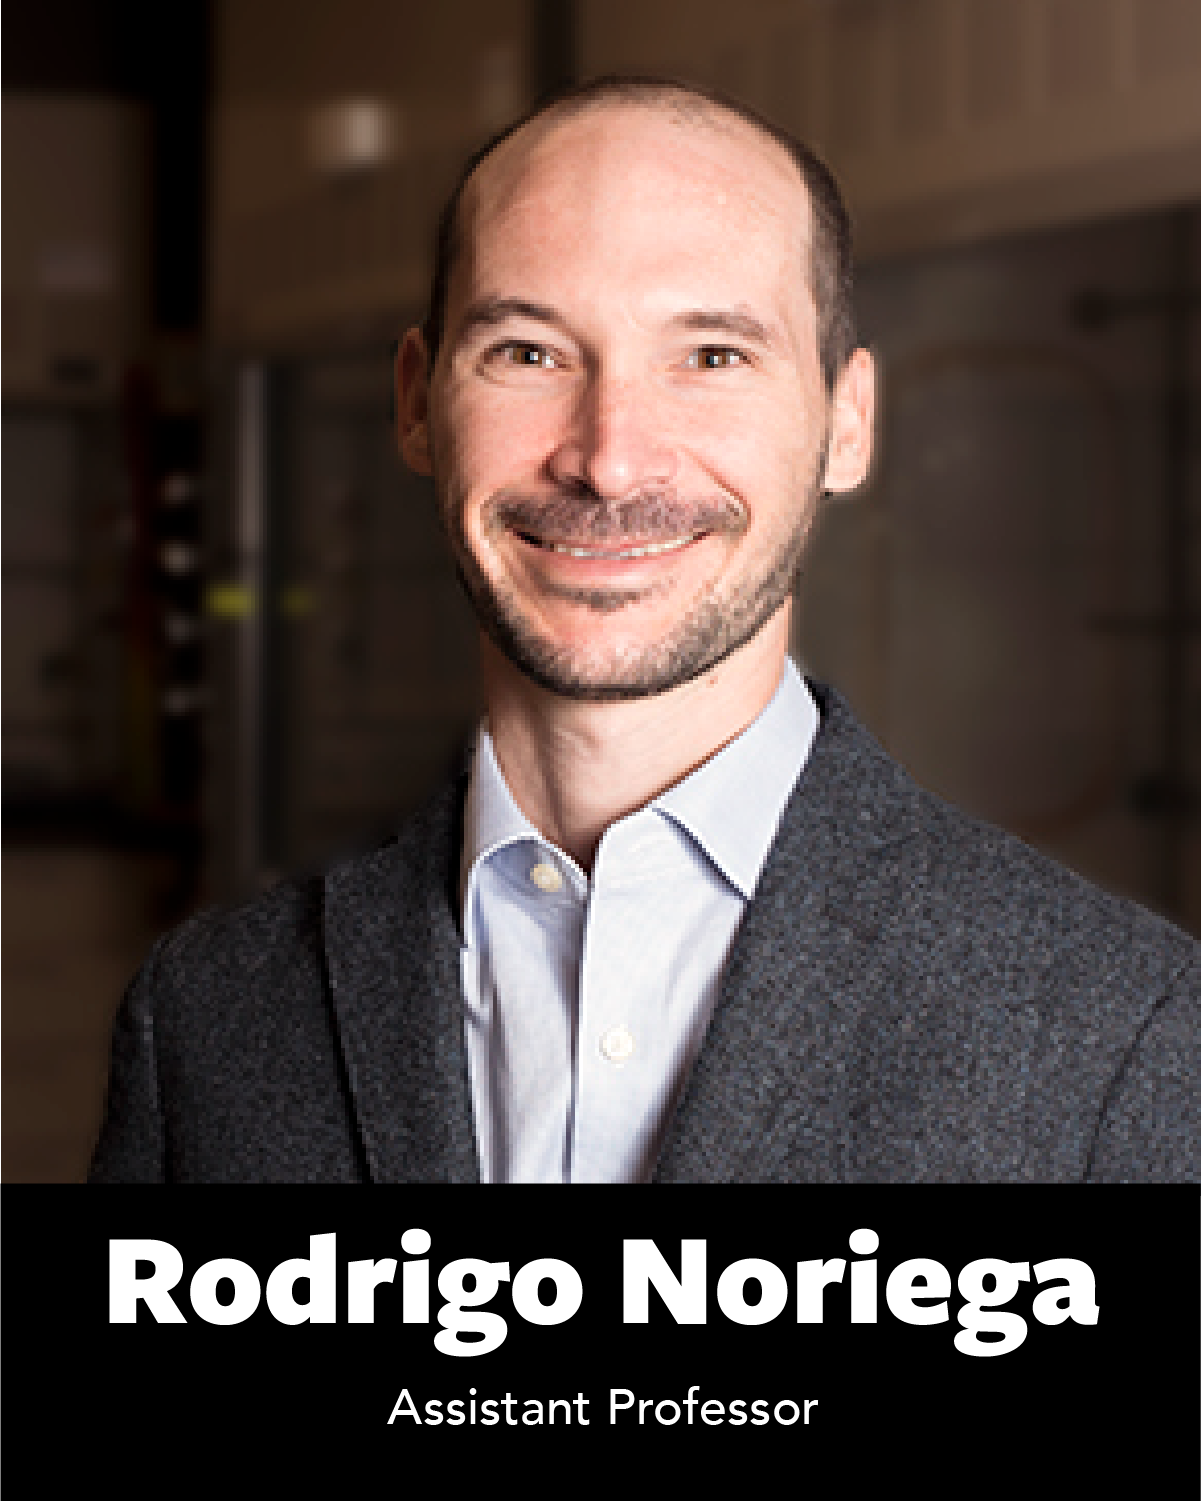 Rodrigo Noriega